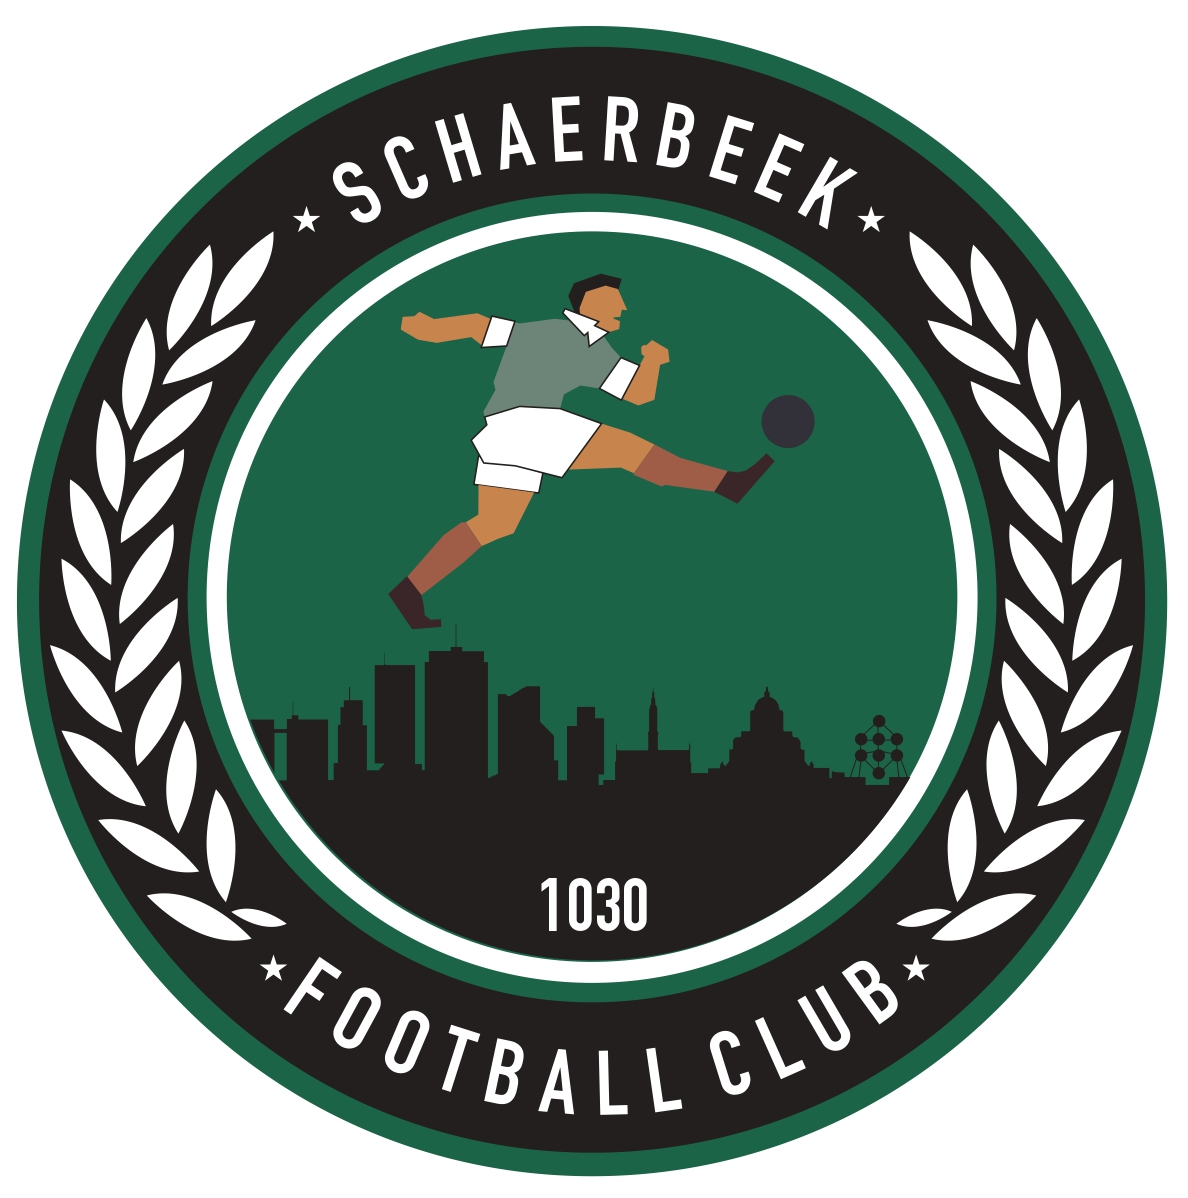 16 - Football Club Schaerbeek A